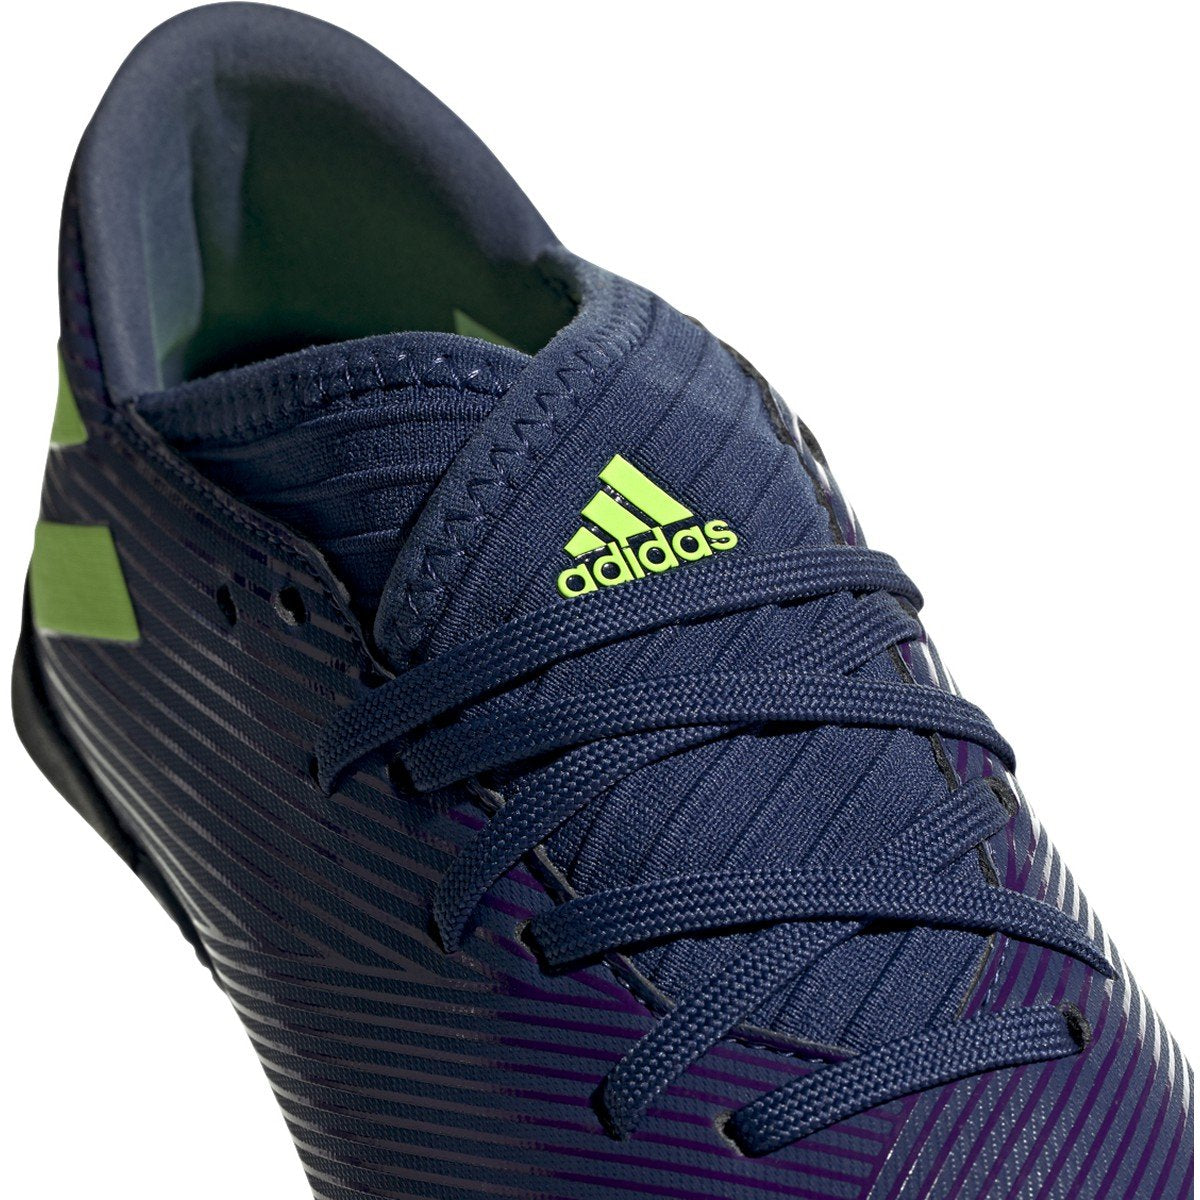 JR Nemeziz Messi Tango 19.3 TF Soccer Shoe - Tech Indigo/Signal Green/Glory Purple